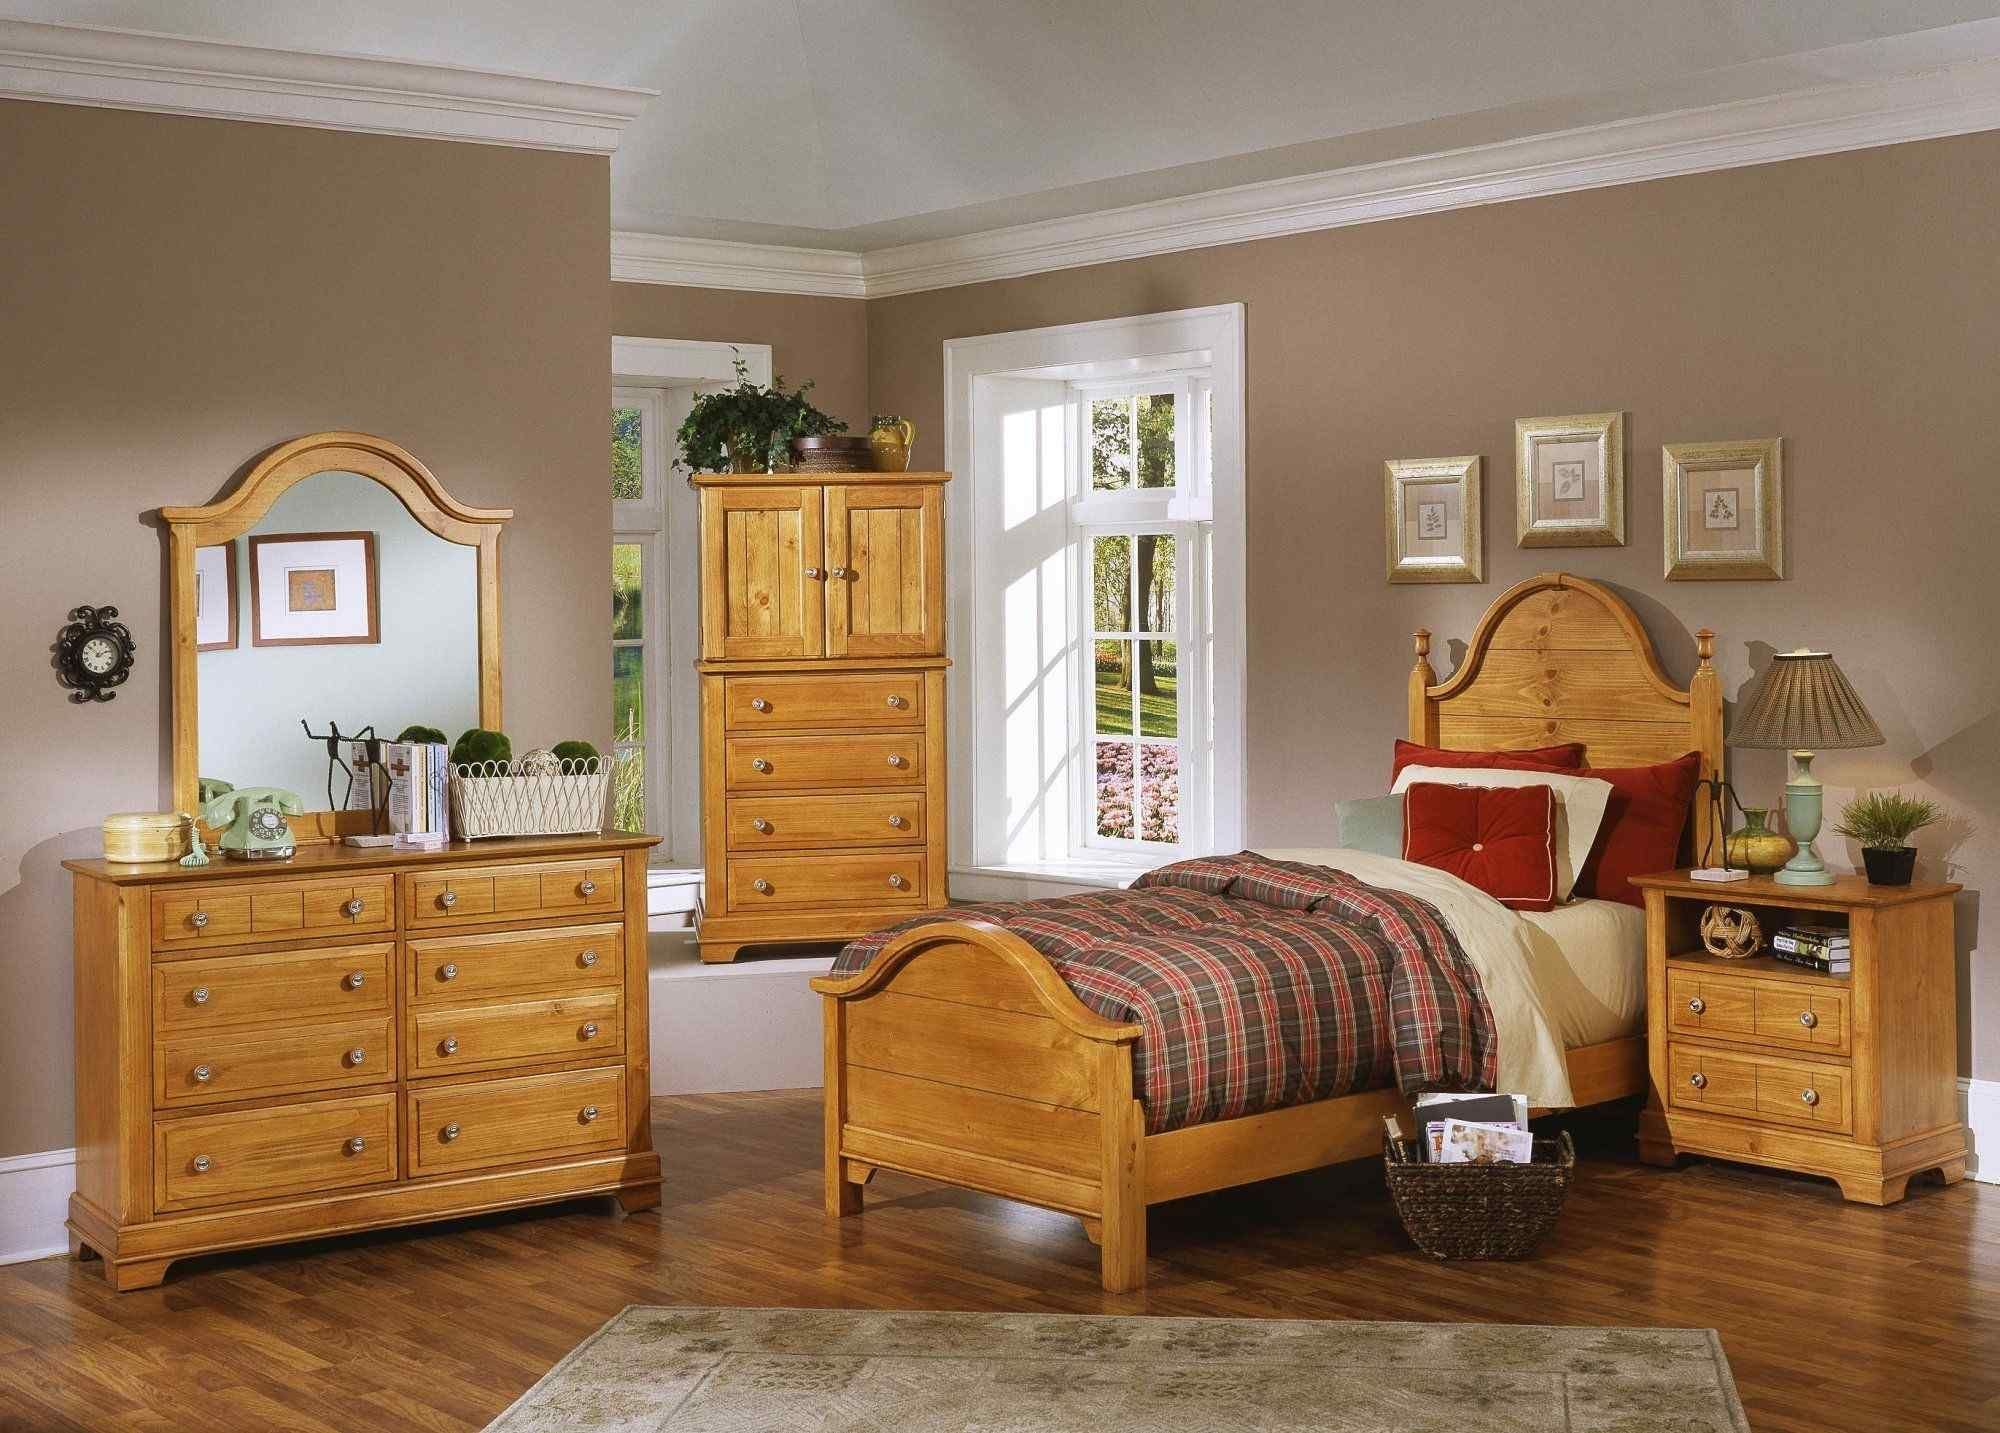 Сосна сайт мебели мебель. Комната с деревянной мебелью. Мебель из сосны в интерьере. Спальня с мебелью из сосны. Спальня с деревянной мебелью.